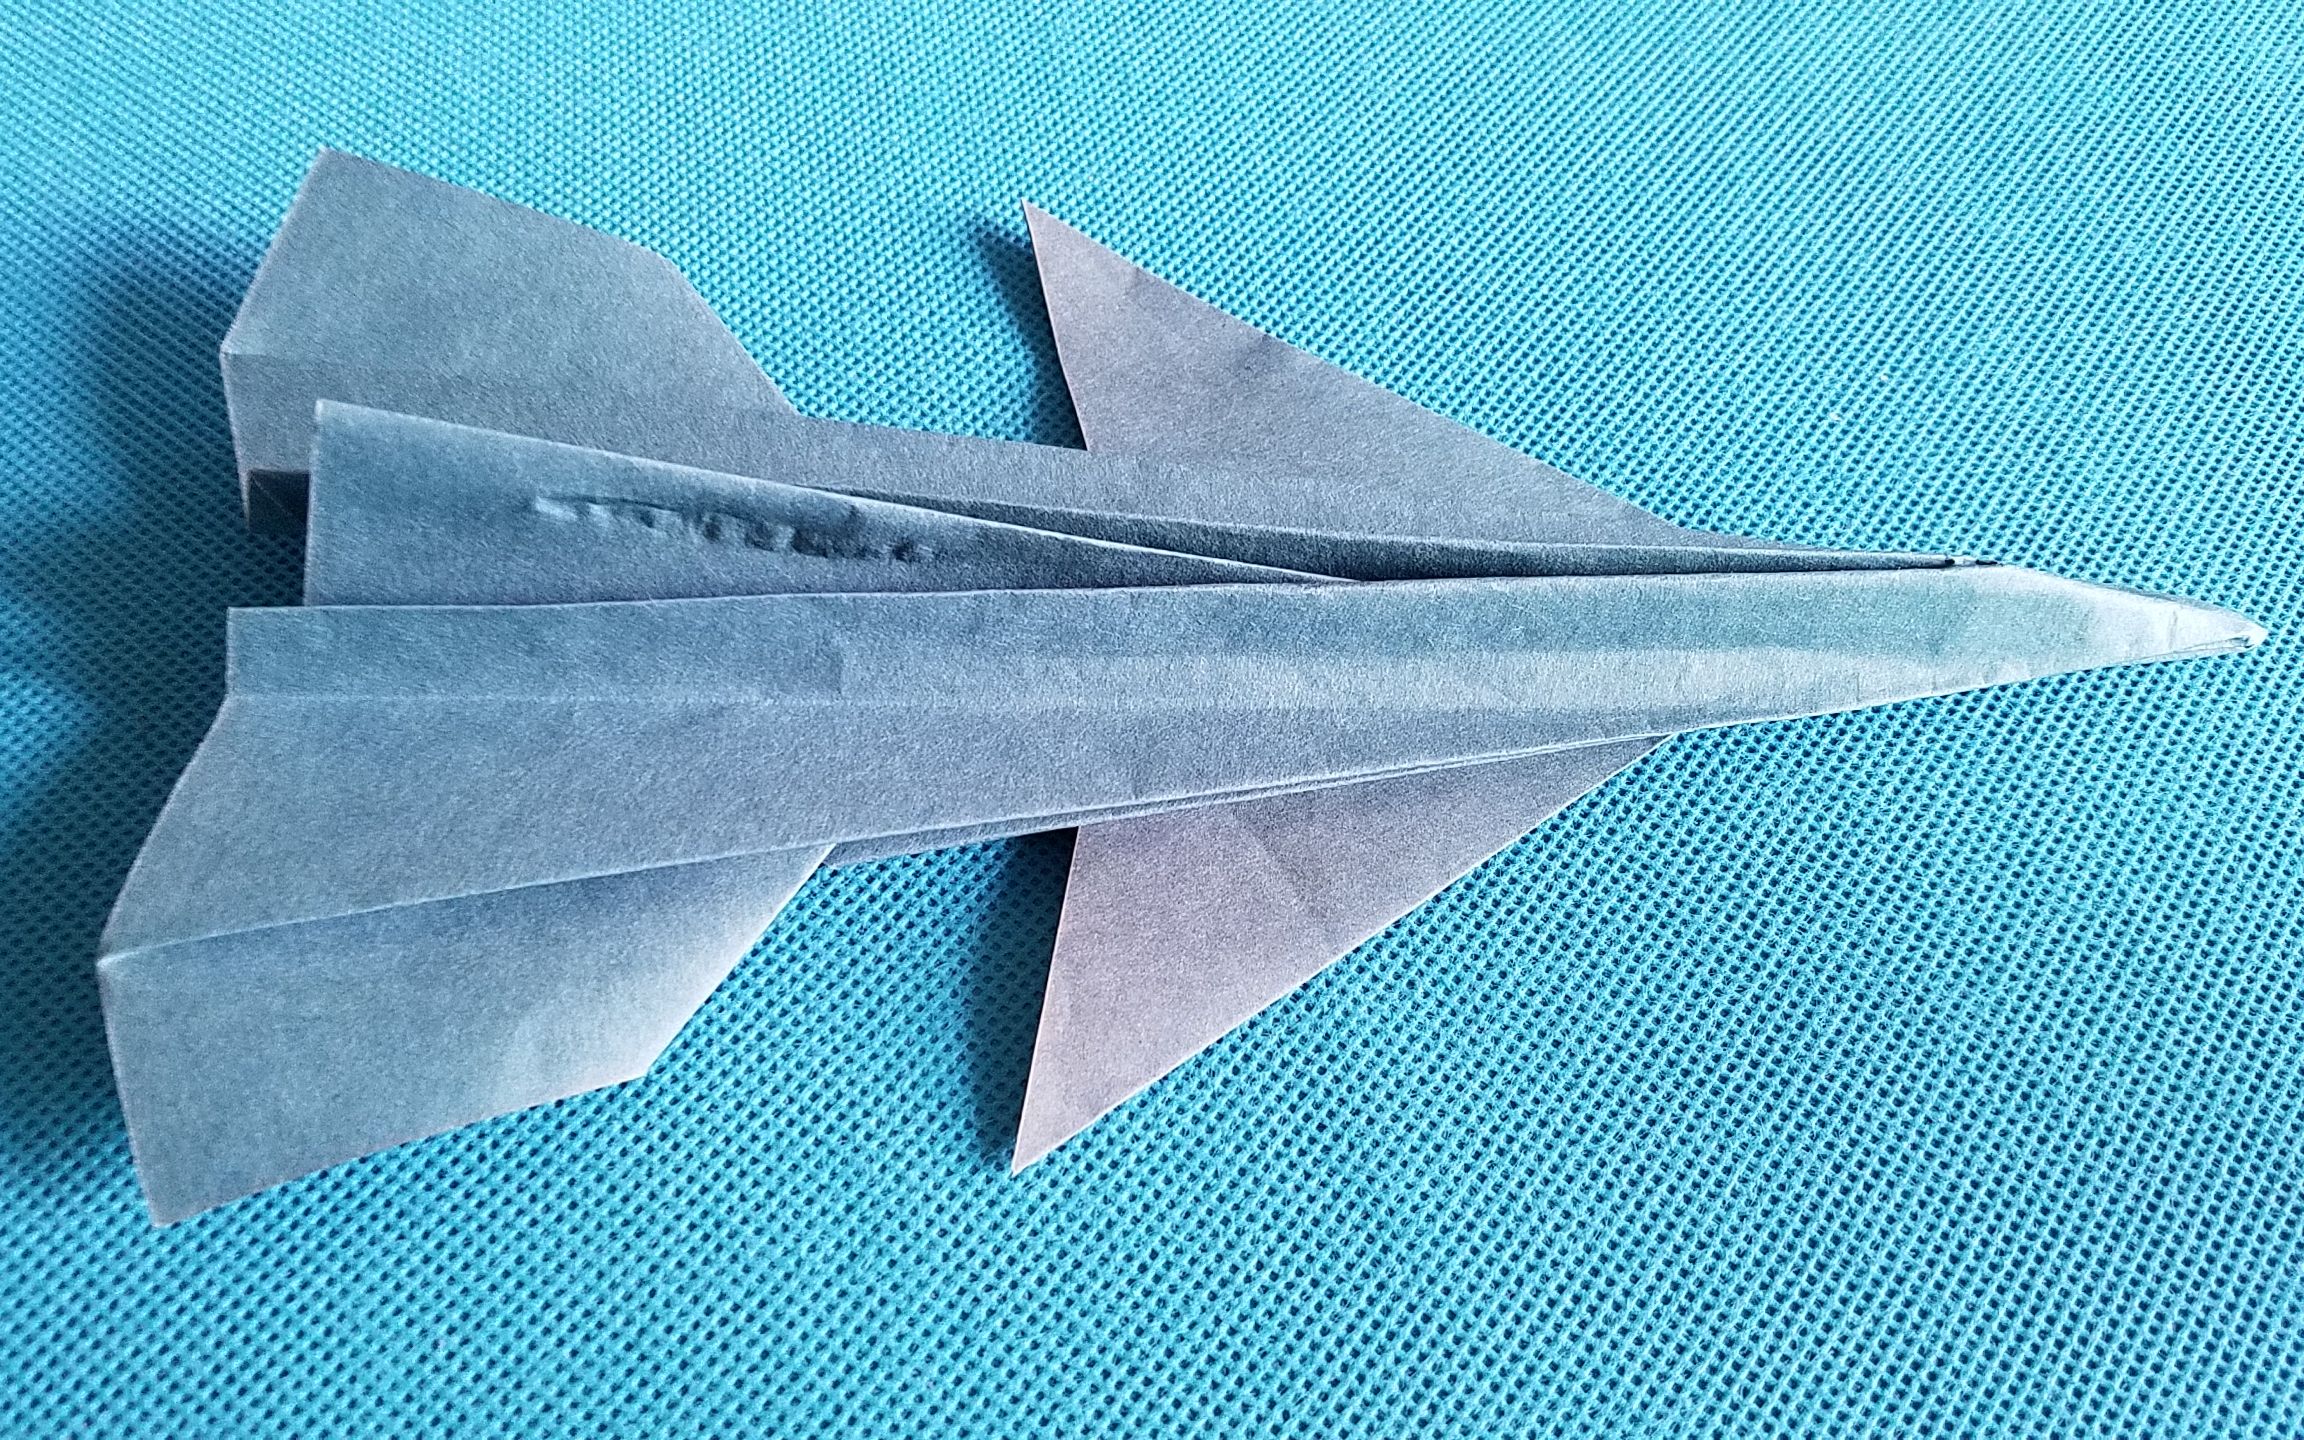 【折纸王子】纸飞机f16战斗机 讲解详细 简单易学 给孩子做玩具